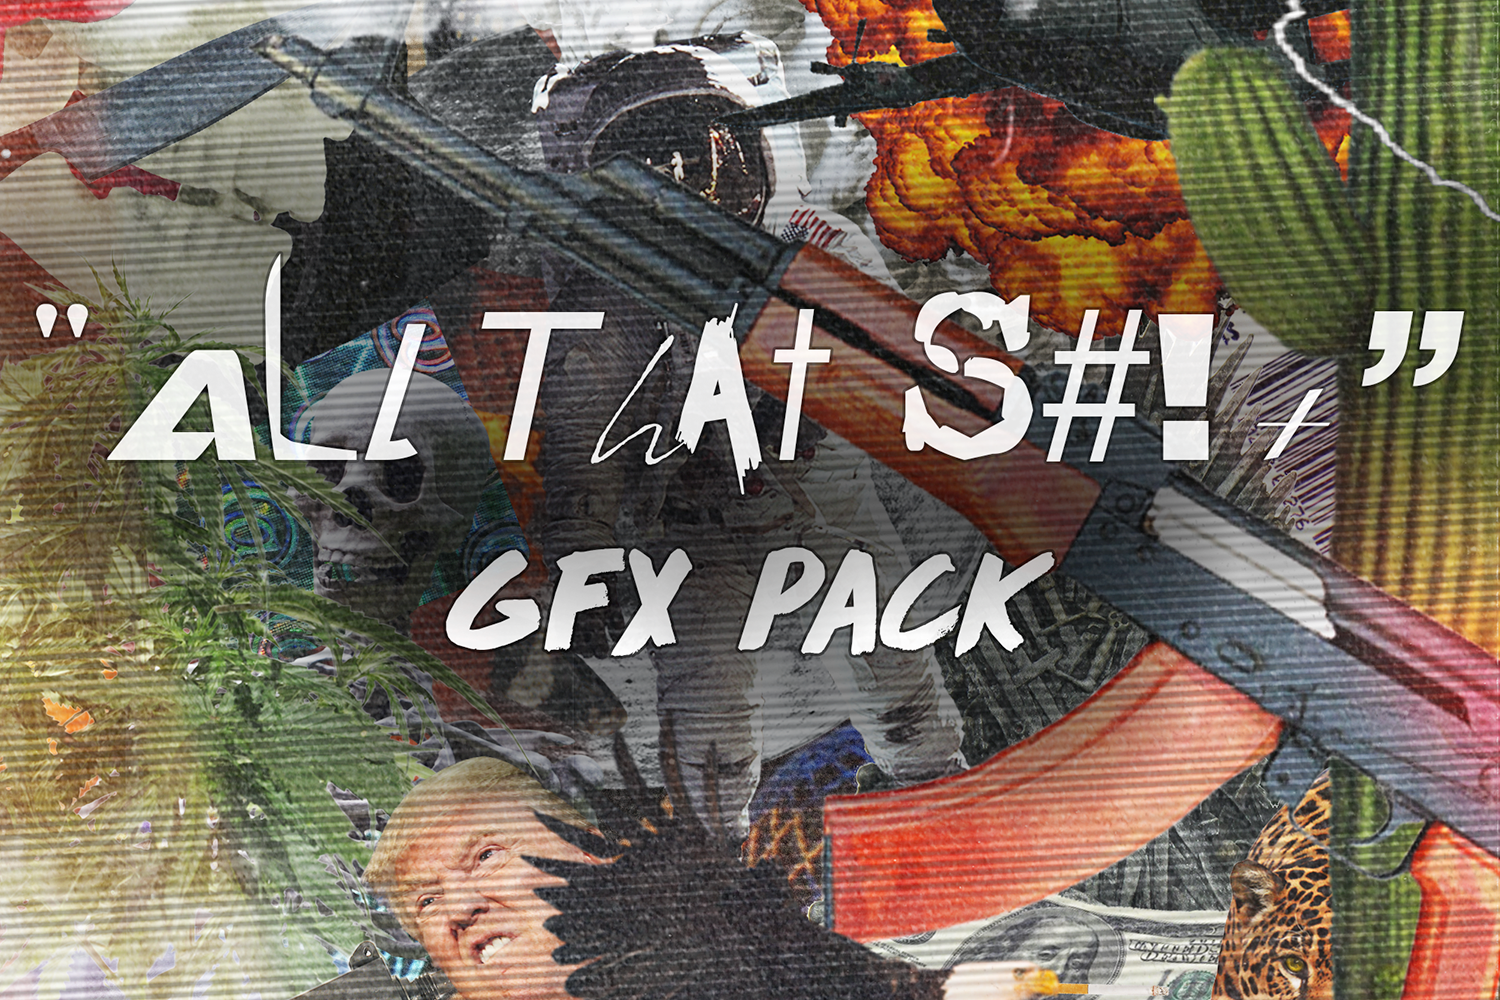 潮流炫酷做旧专辑CD封面字体不干胶标签贴纸纹理设计素材 “All That S#!+” | GFX Pack